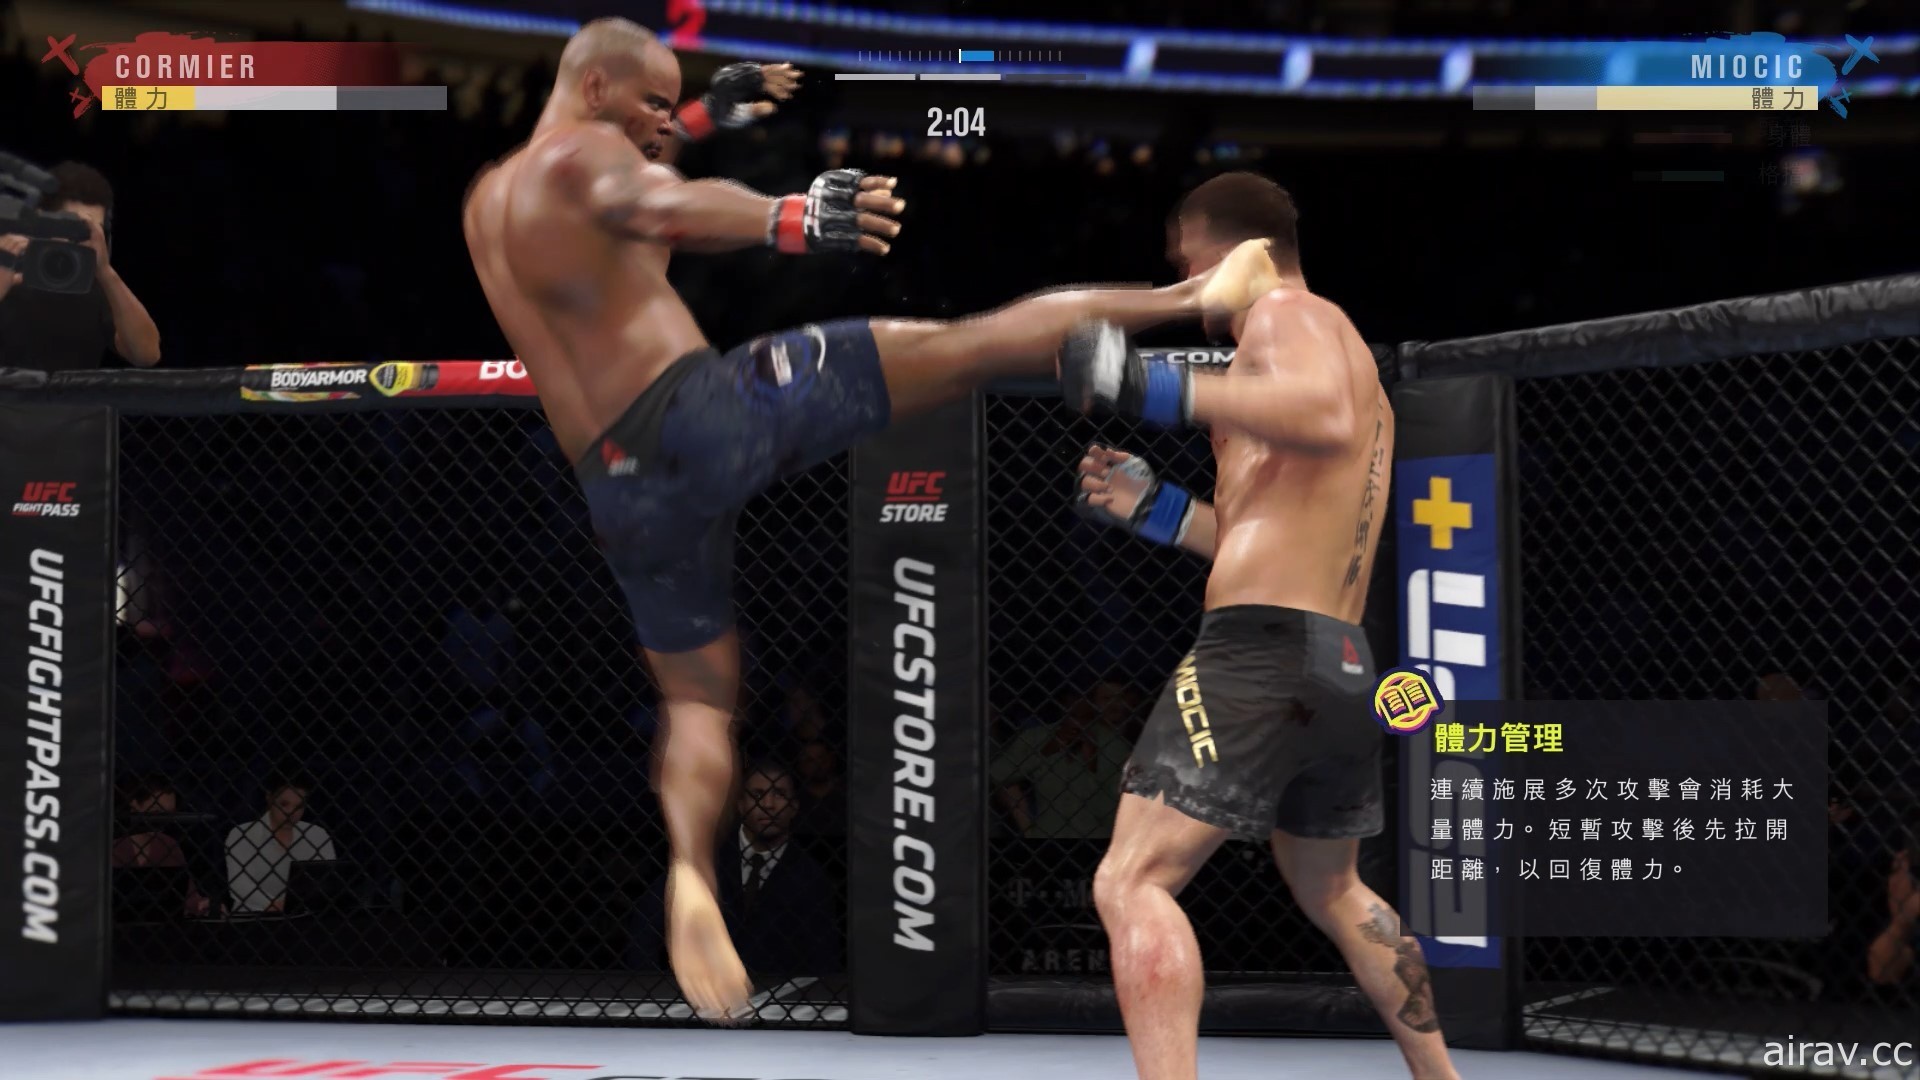 【試玩】《EA SPORTS UFC 4》強調真實與細膩的實感格鬥技大戰